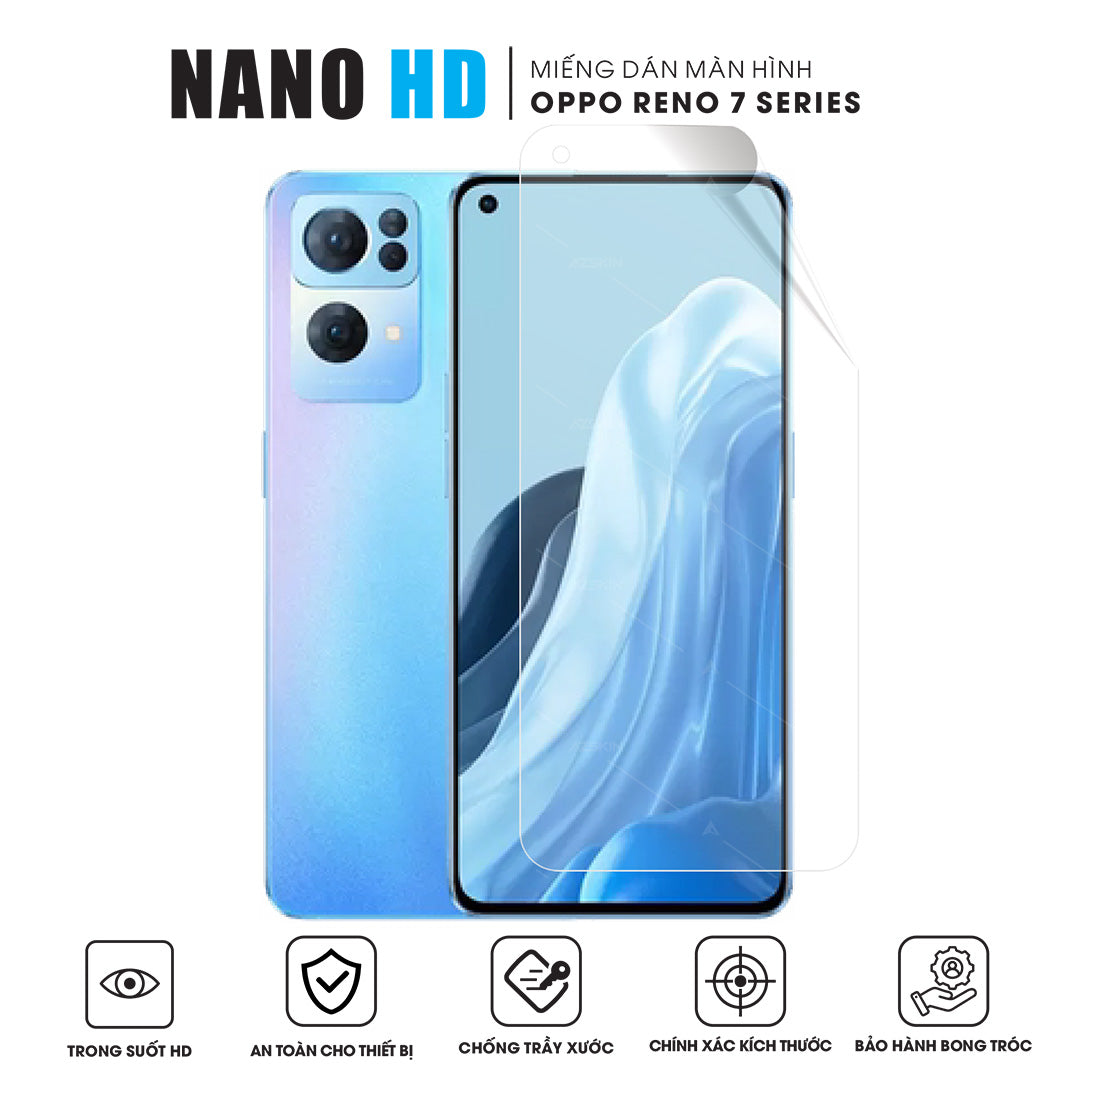 Miếng dán màn hình Nano HD cho OPPO Reno 7 series